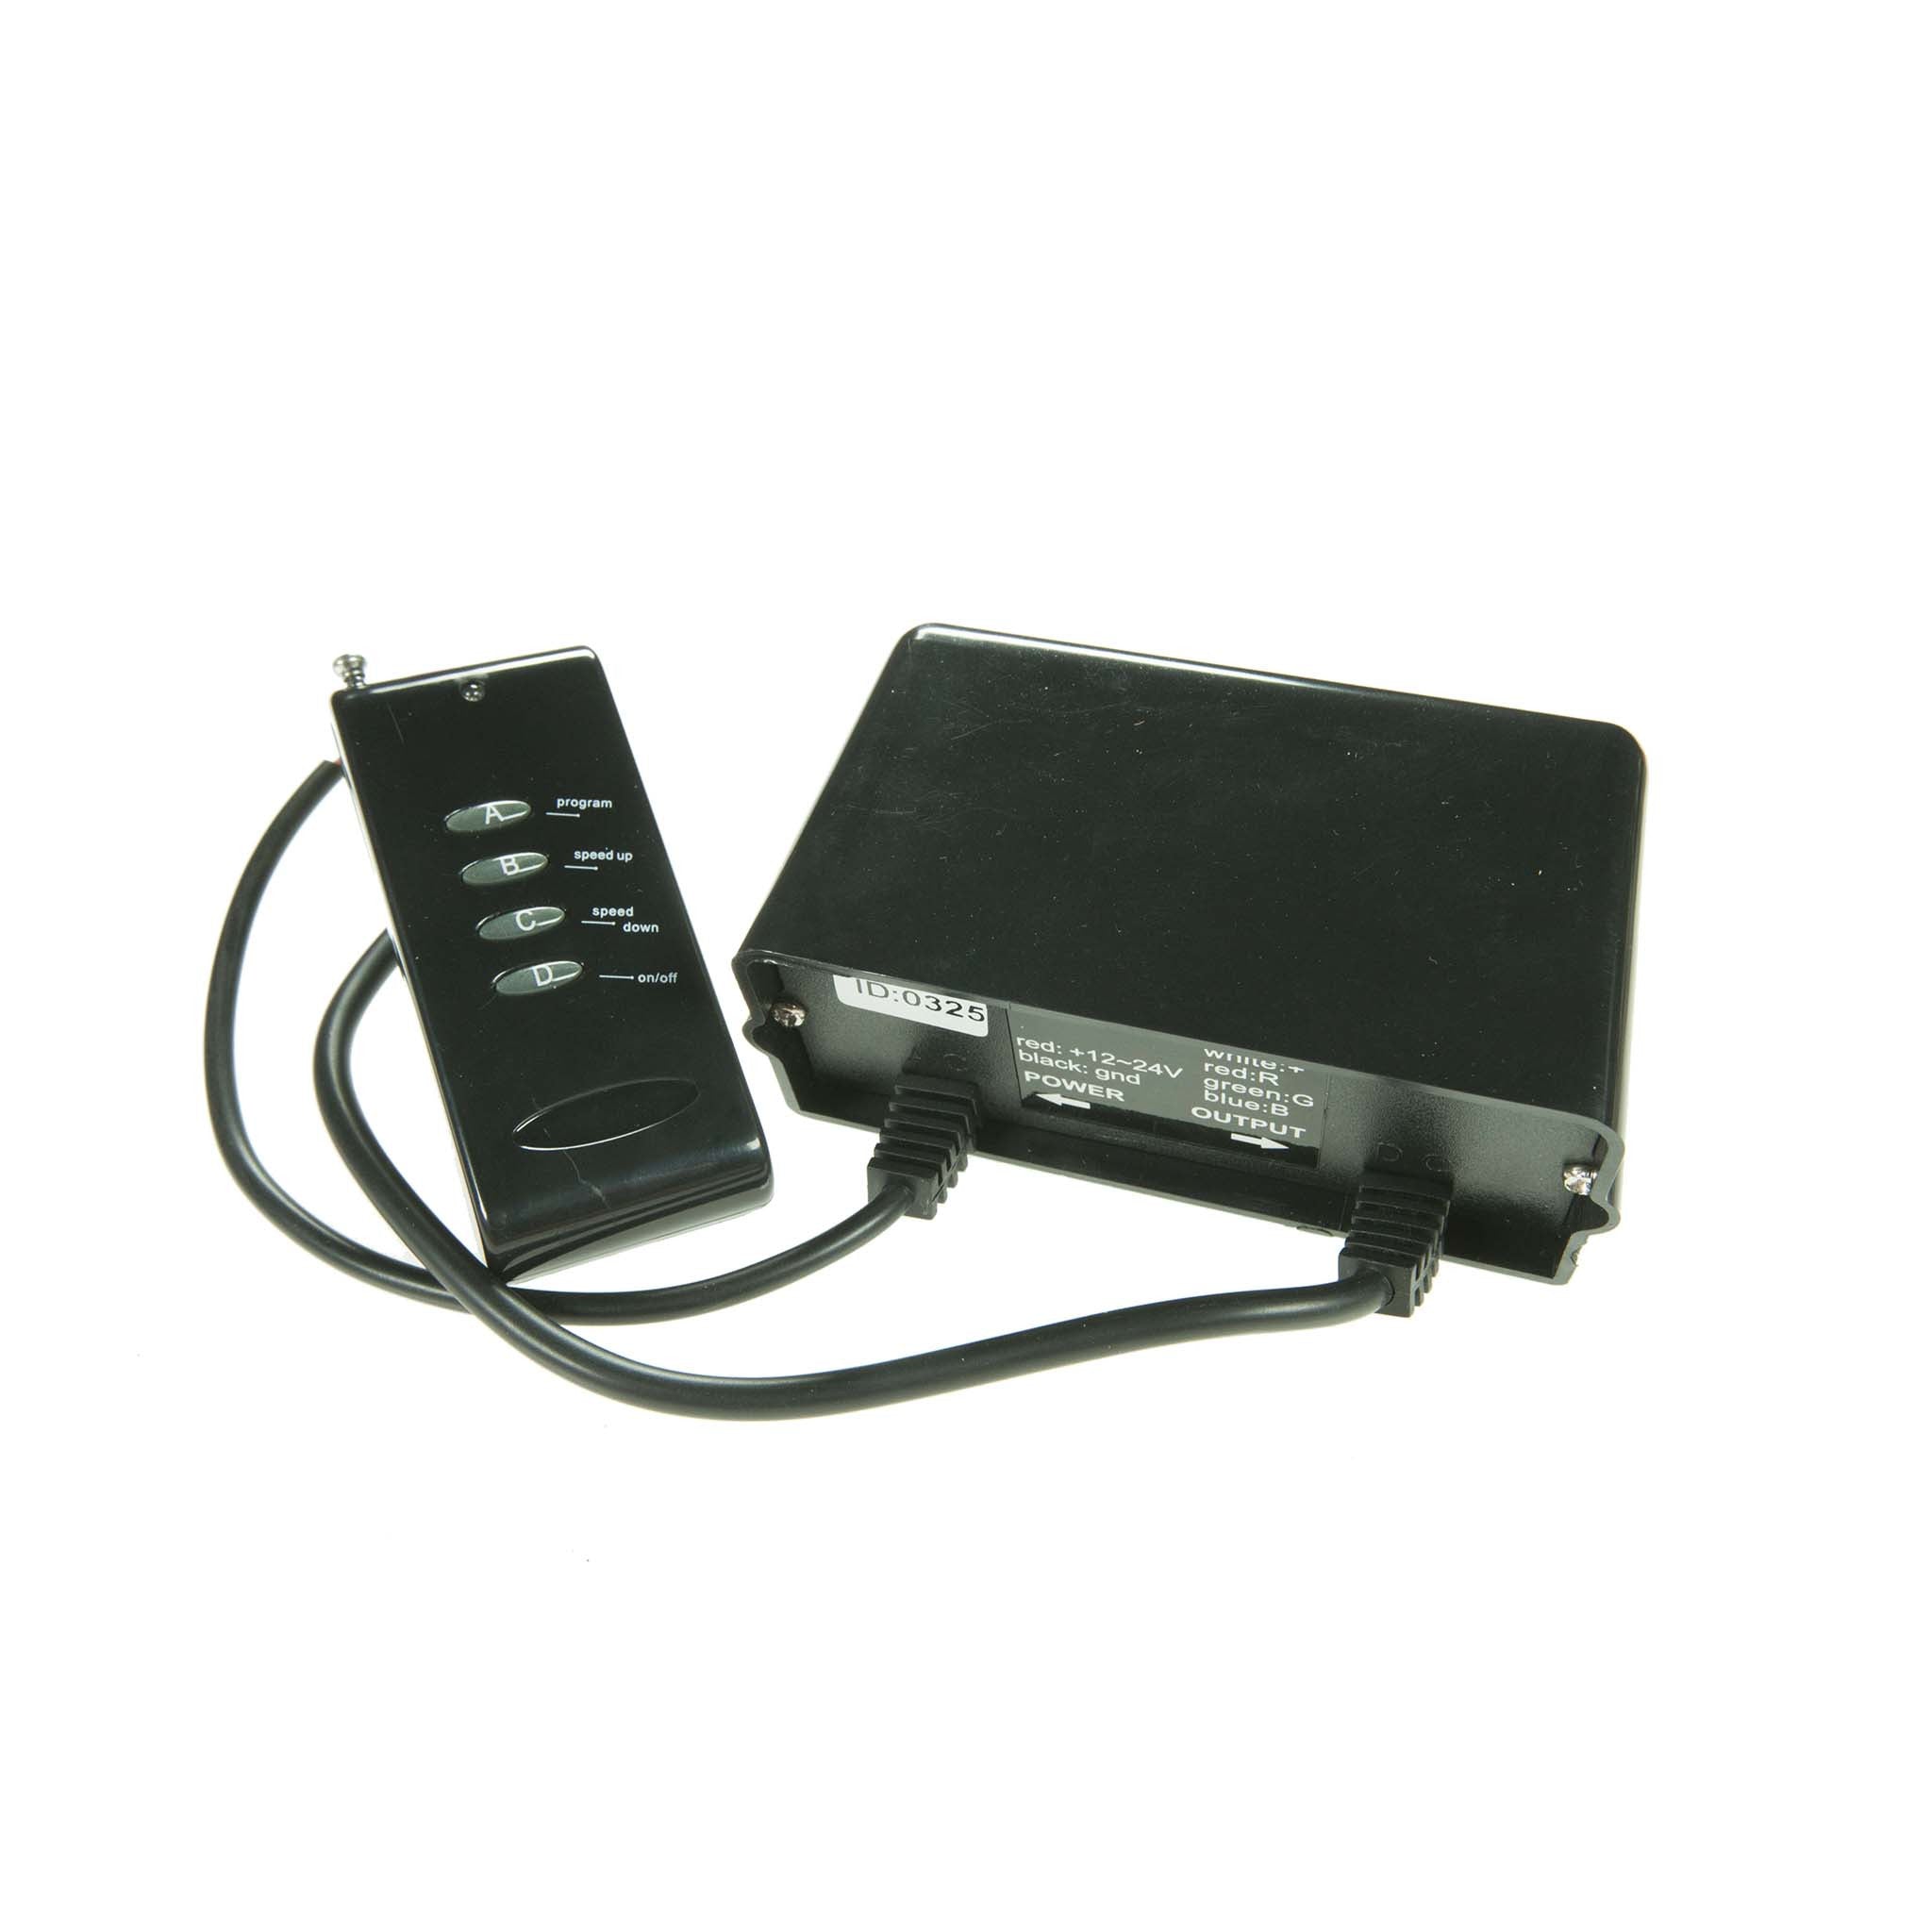 Trimline RGB Wireless Controller Trimline RGB Wireless Controller - Moss LED